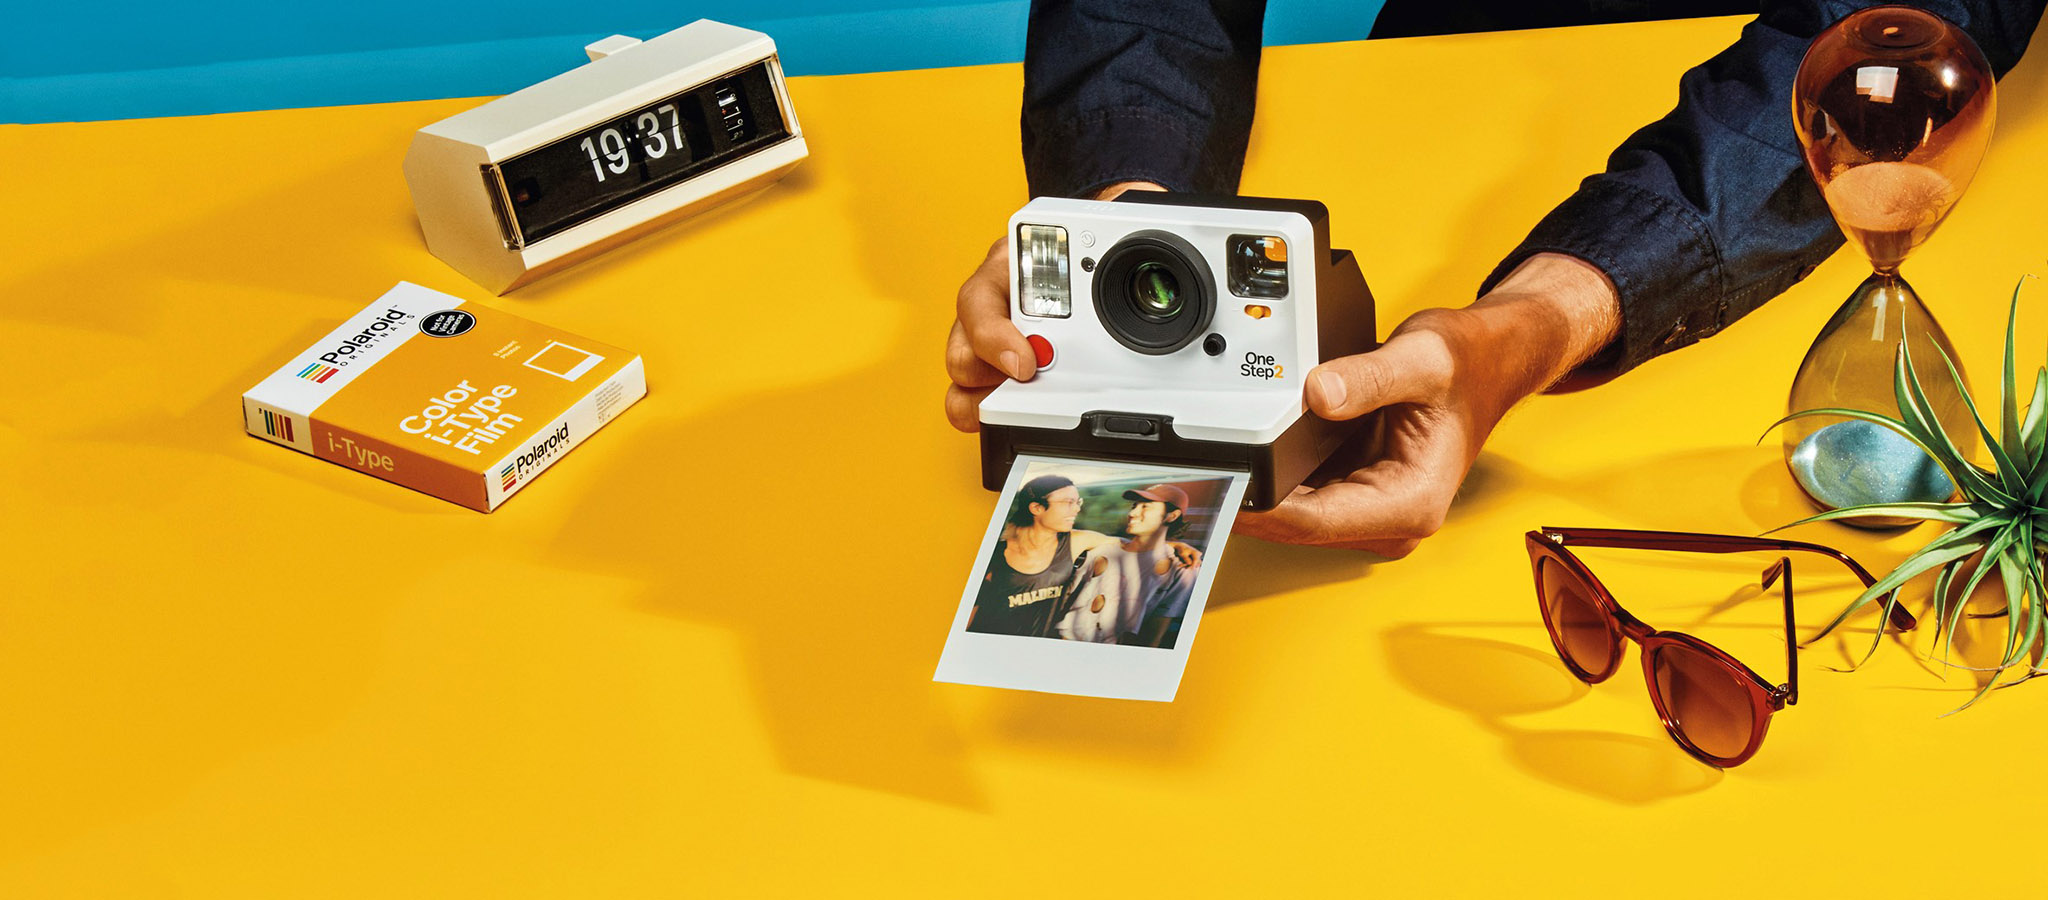 Polaroid giới thiệu máy ảnh chụp lấy liền OneStep 2 và loại phim mới i-type